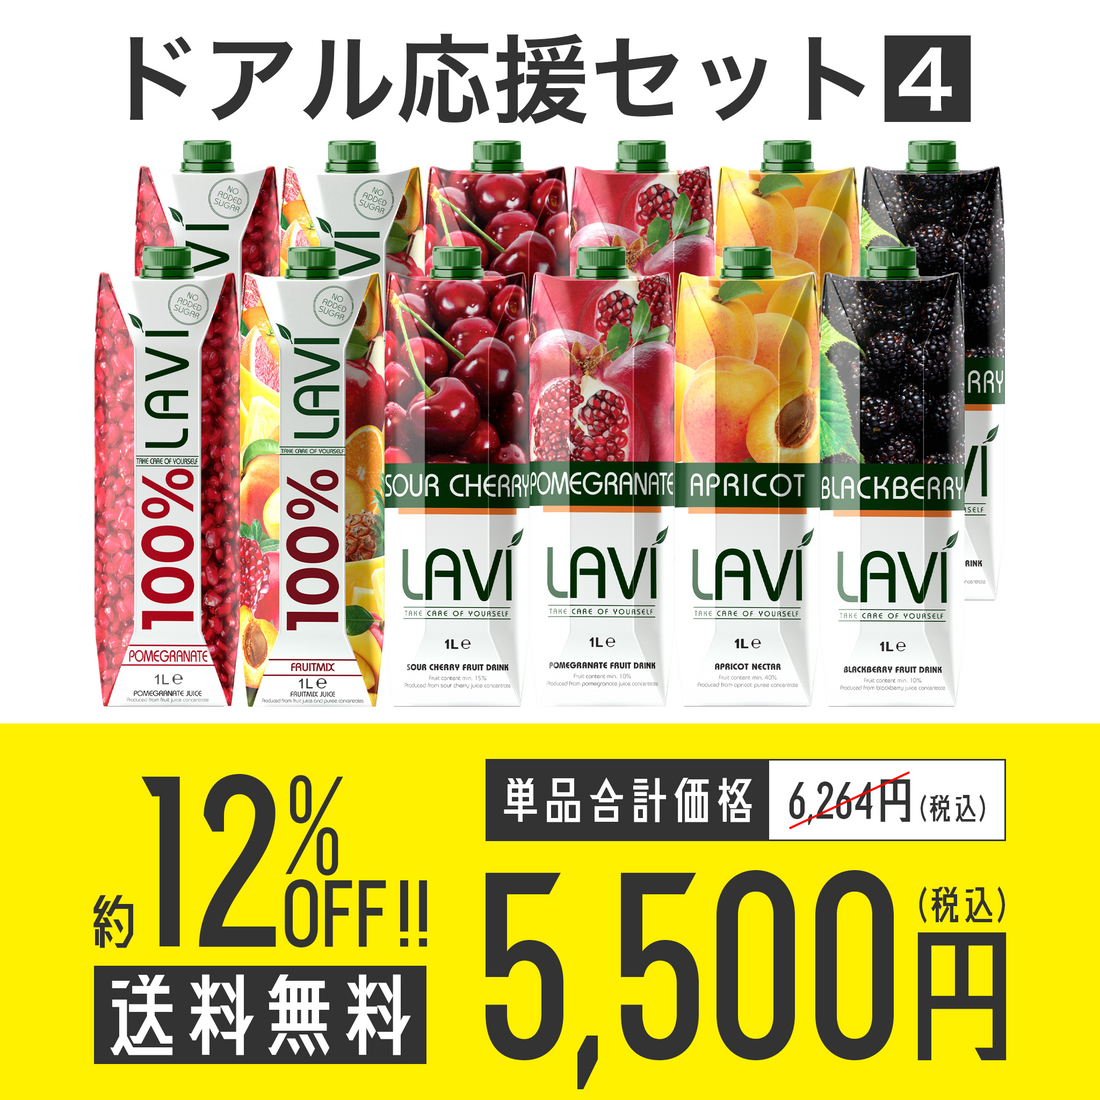 【送料無料】ドアル応援セット No.4 Lavi フルーツジュース6種各2本セット